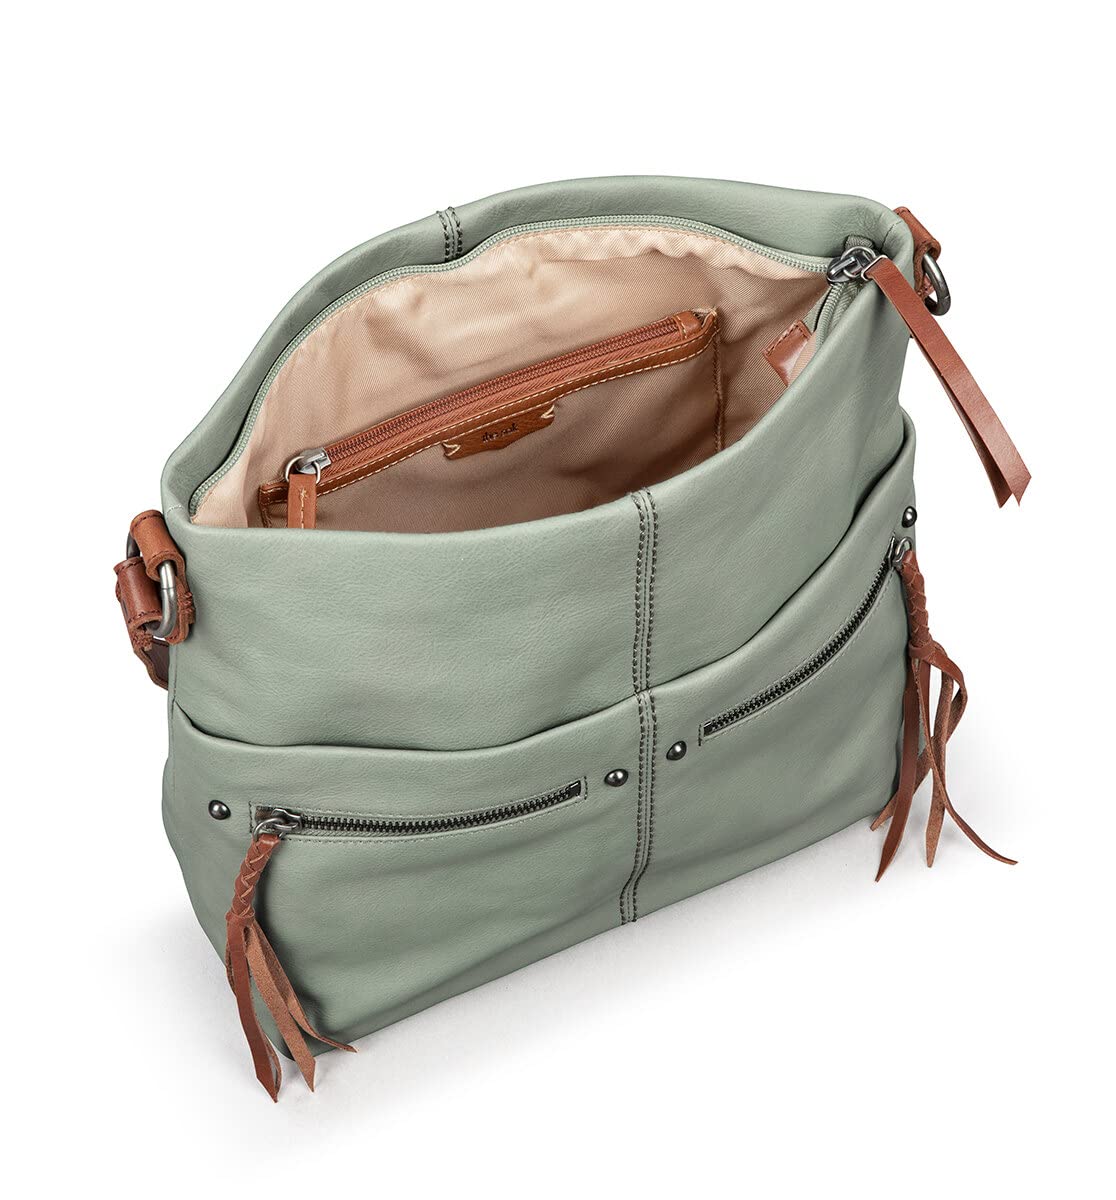 The Sak Ashland Bucket Bag in Leather